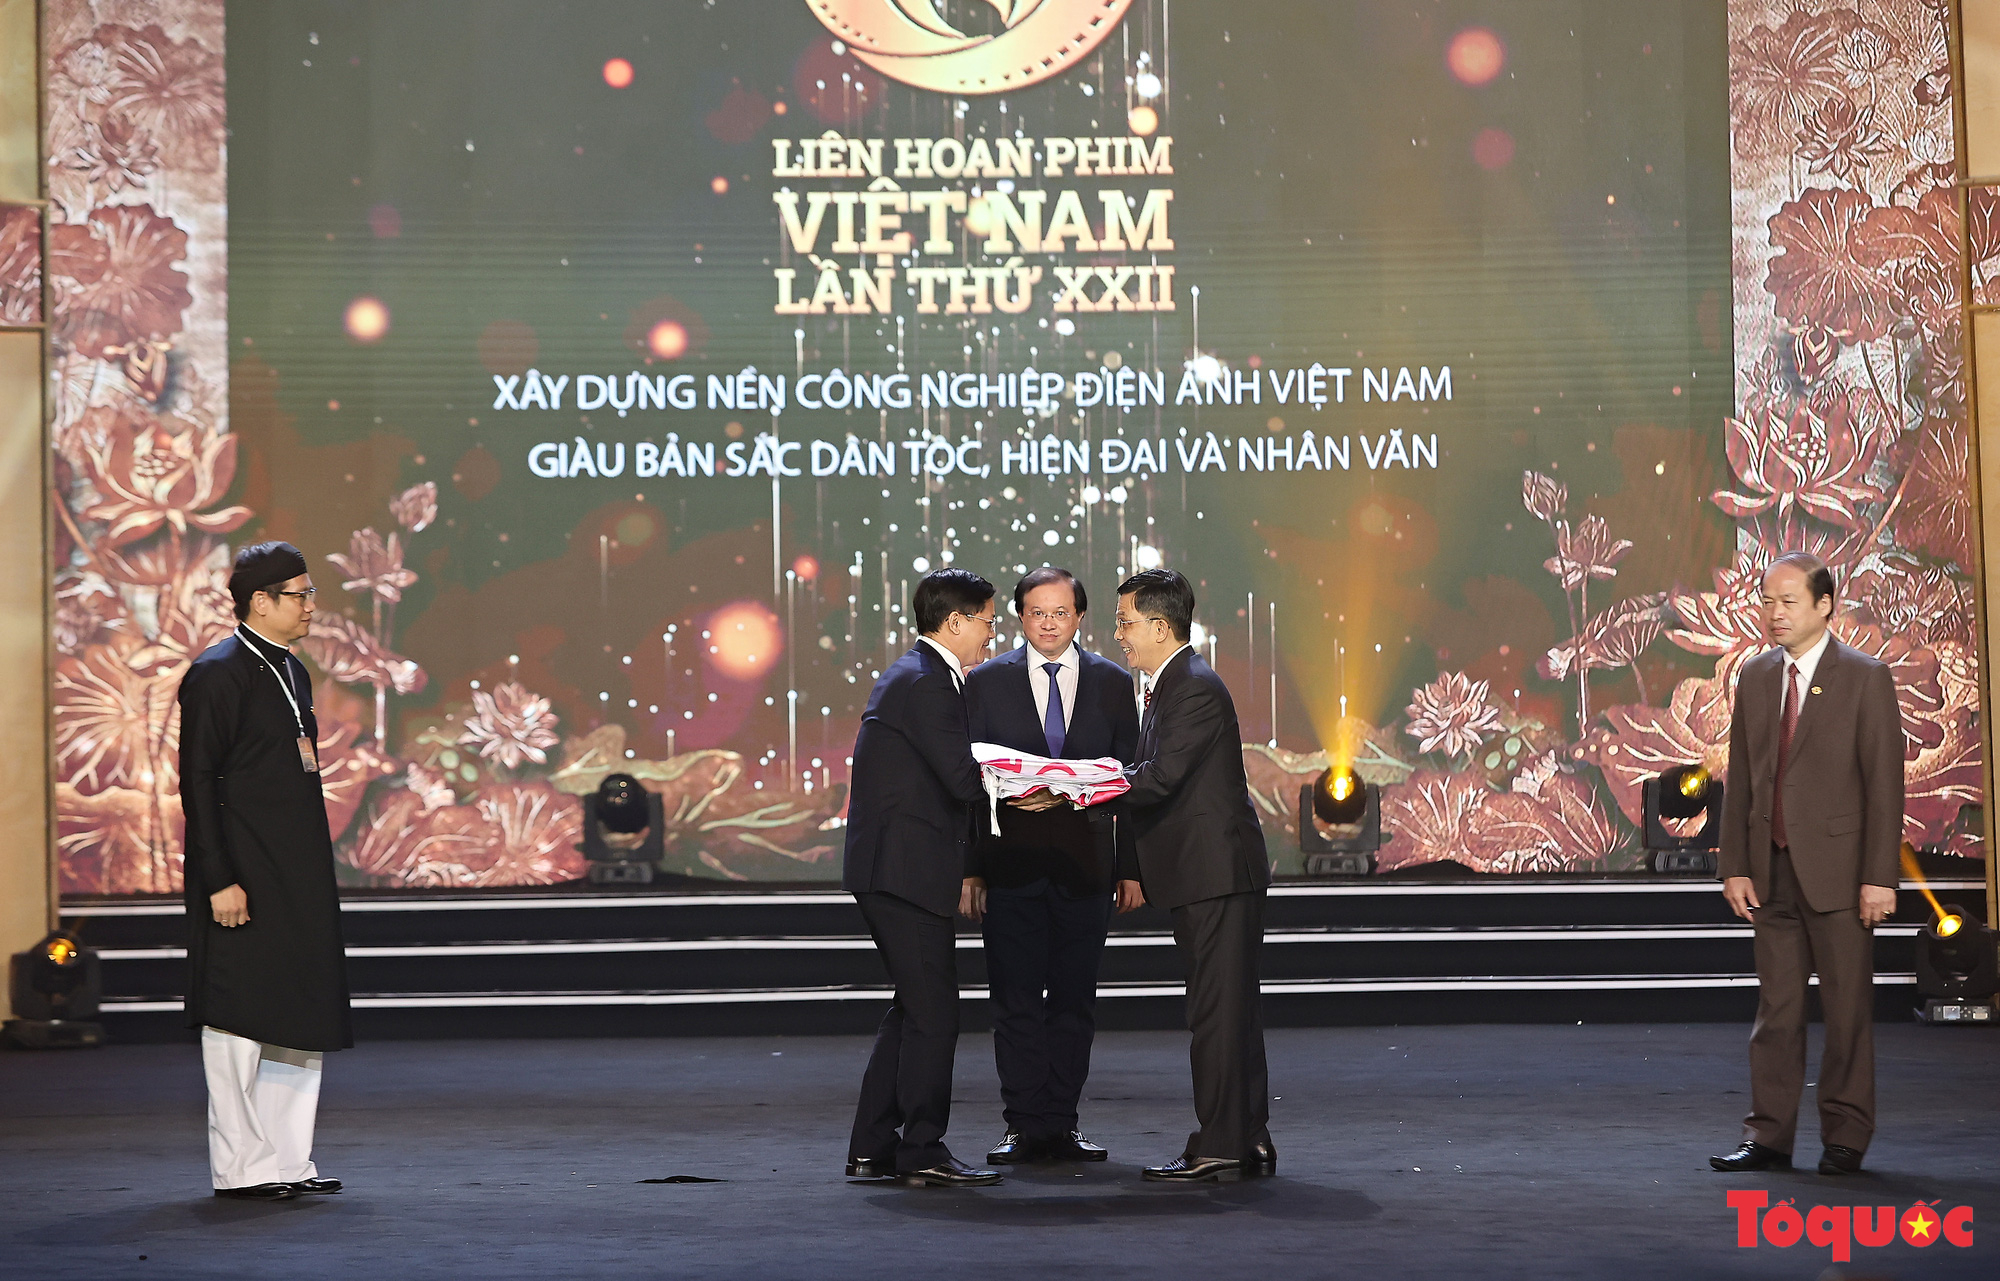 Toàn cảnh Lễ Bế mạc và trao giải Liên hoan phim Việt Nam lần thứ XXII  - Ảnh 15.